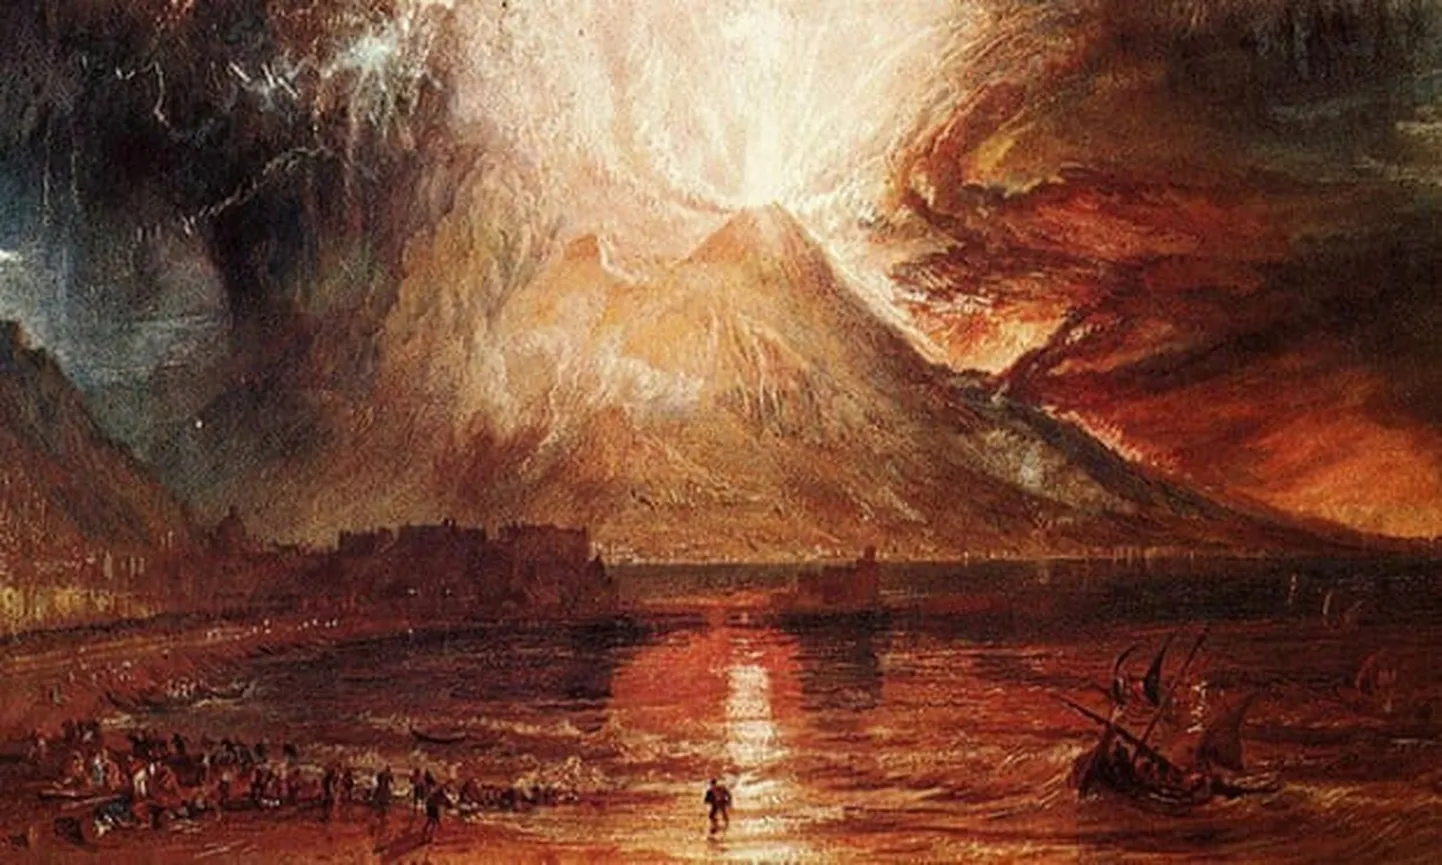 Tamboras vulkāna izvirdums, 1815. gads